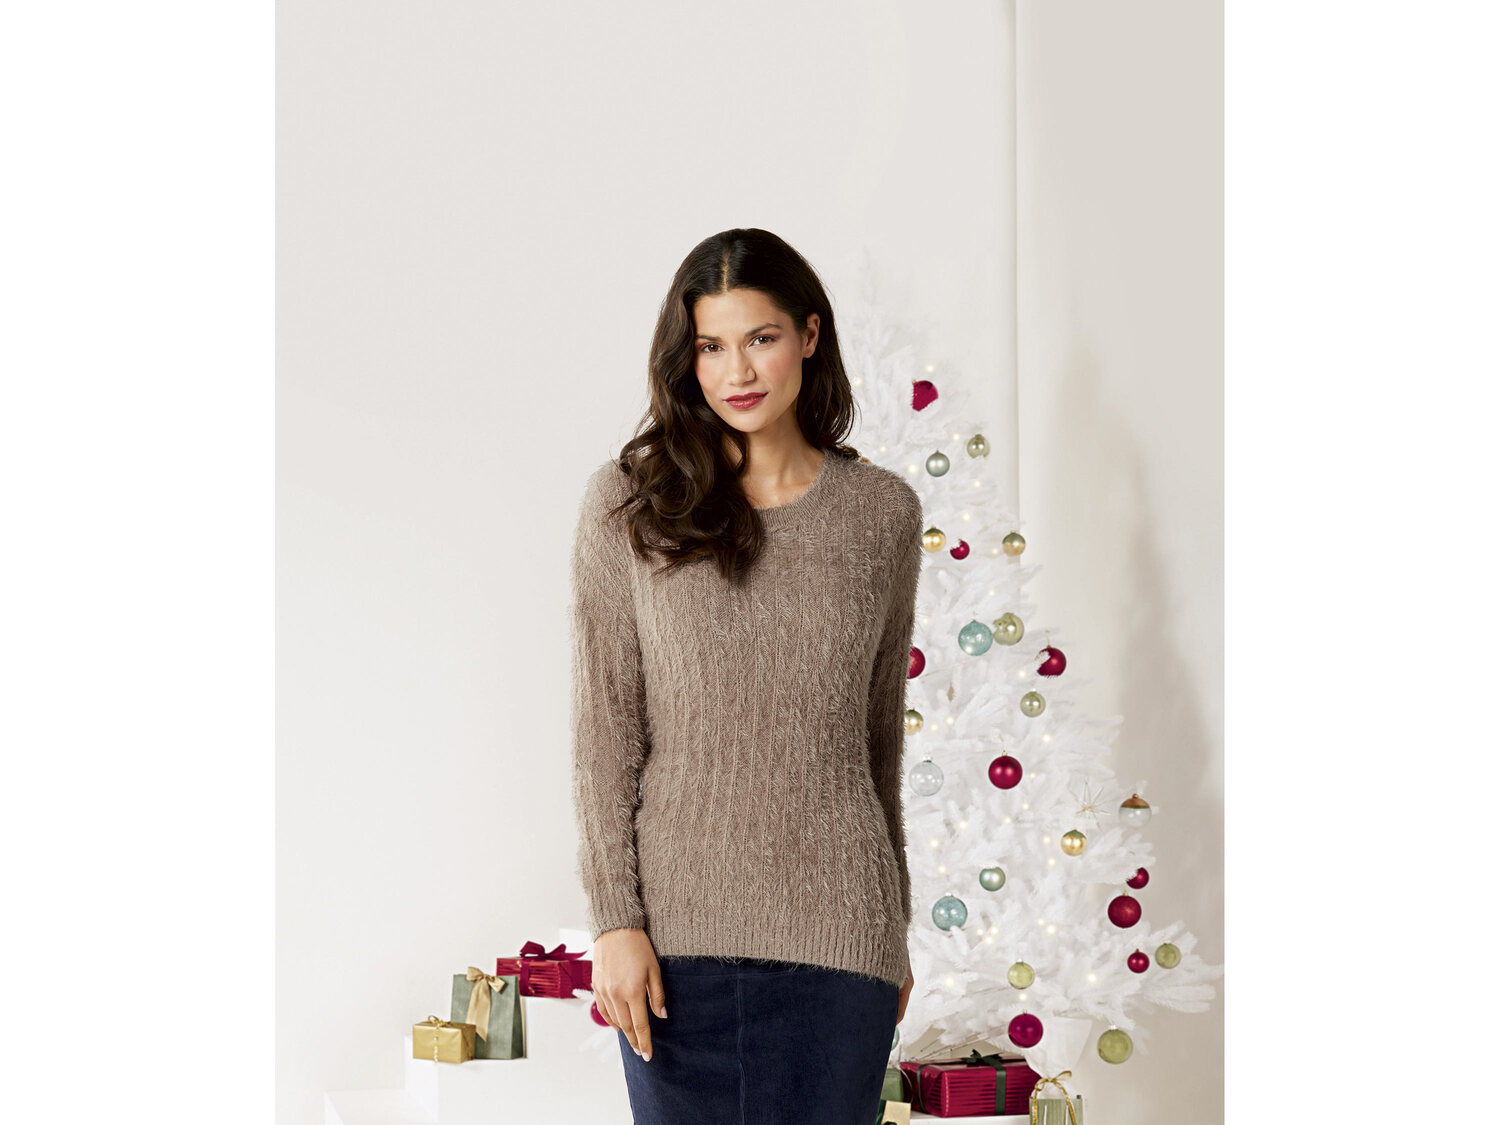 Sweter , cena 39,99 PLN 
- z miękkiej, włochatej wł&oacute;czki
- rozmiary: ...